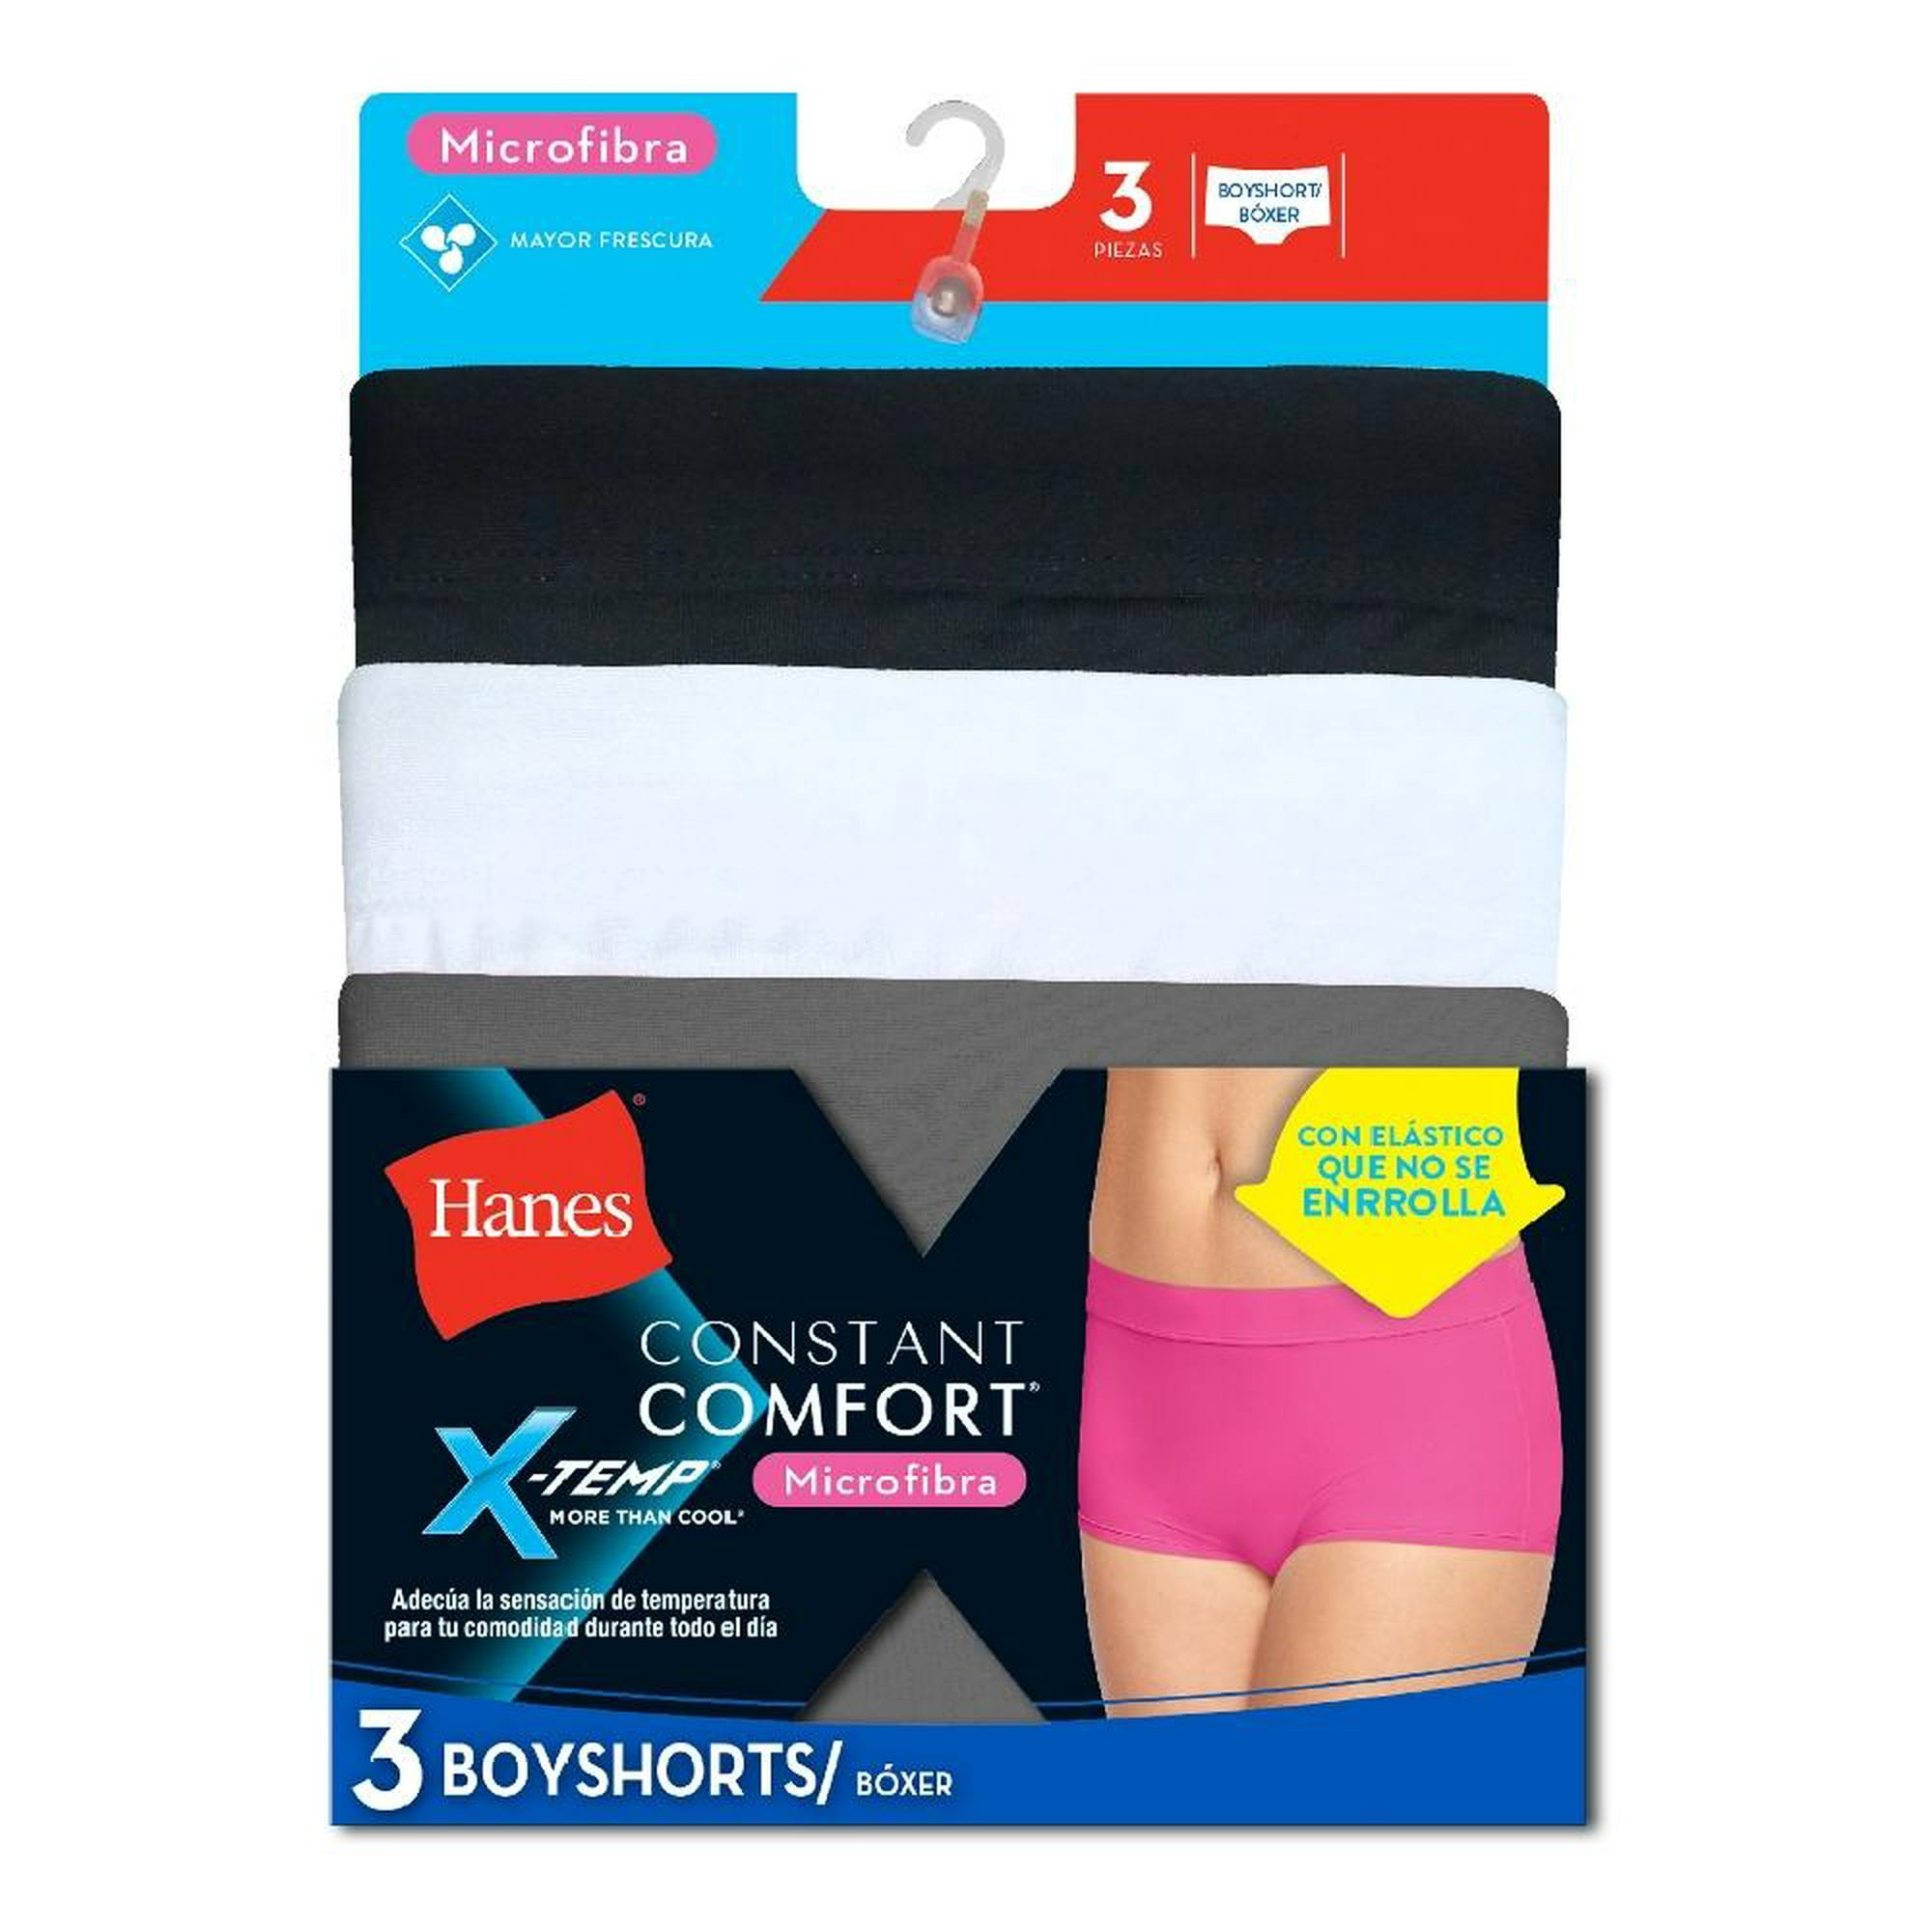 Hanes X-Temp® Constant Comfort® Women's Microfiber, 45% OFF